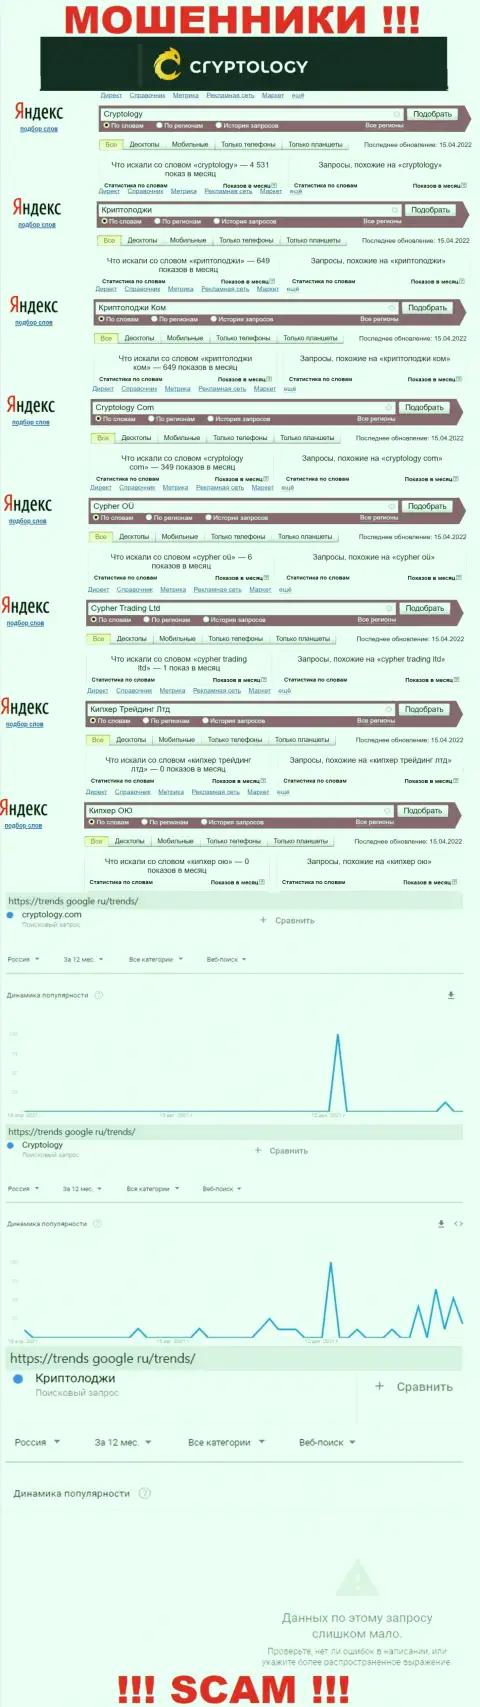 Количество поисковых запросов в поисковиках глобальной сети интернет по бренду мошенников Криптолоджи